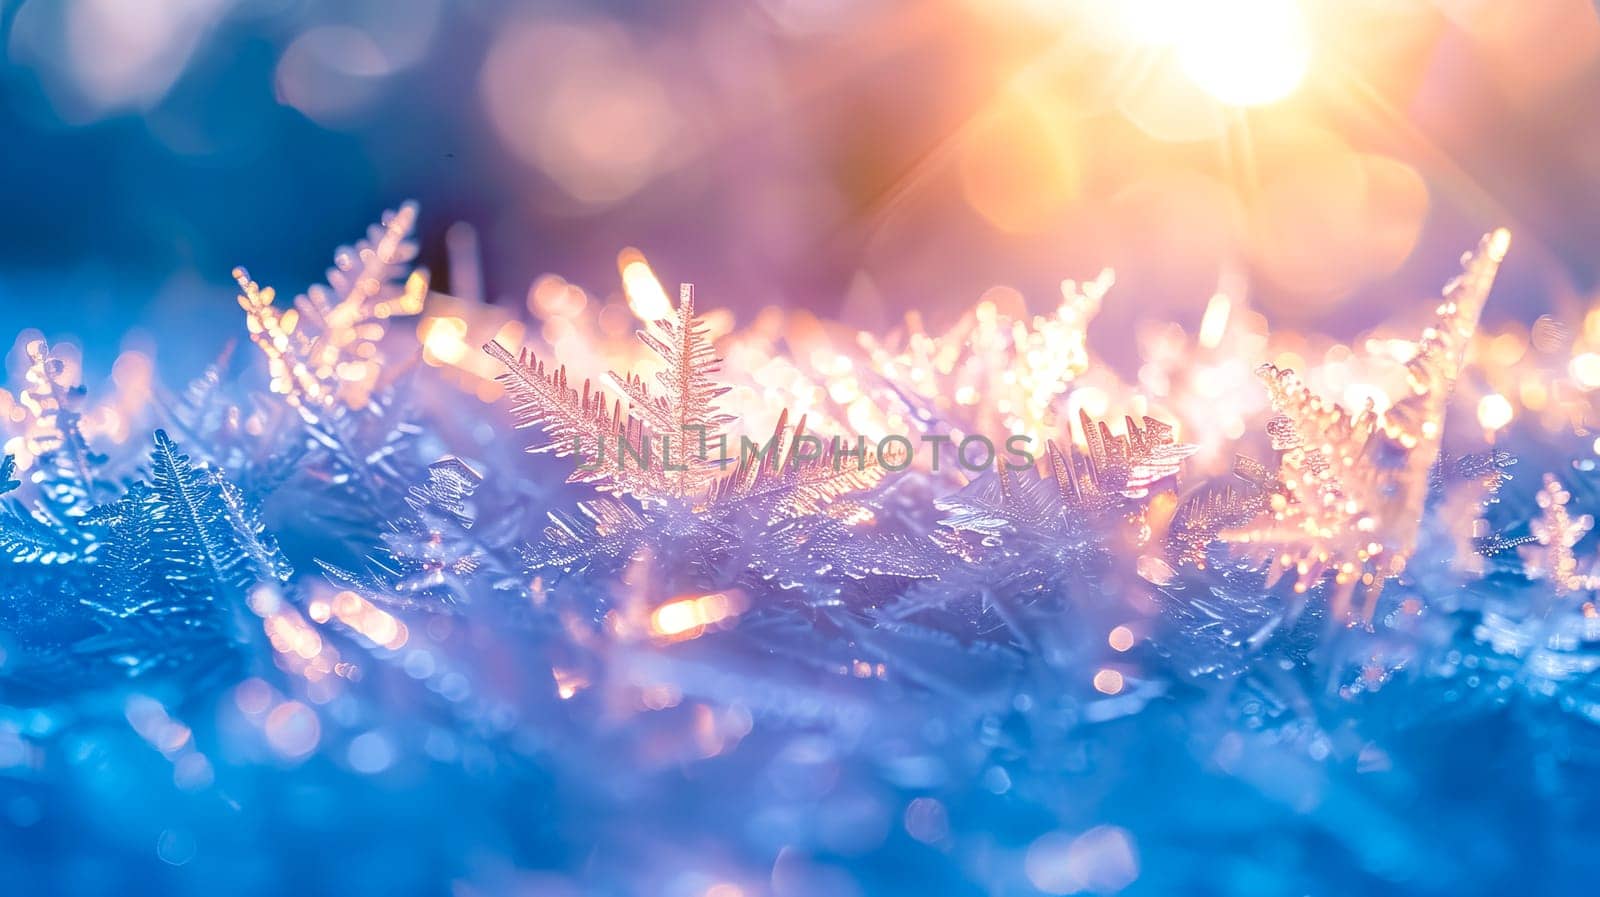 Sunrise sparkle on frosty winter morning by Edophoto